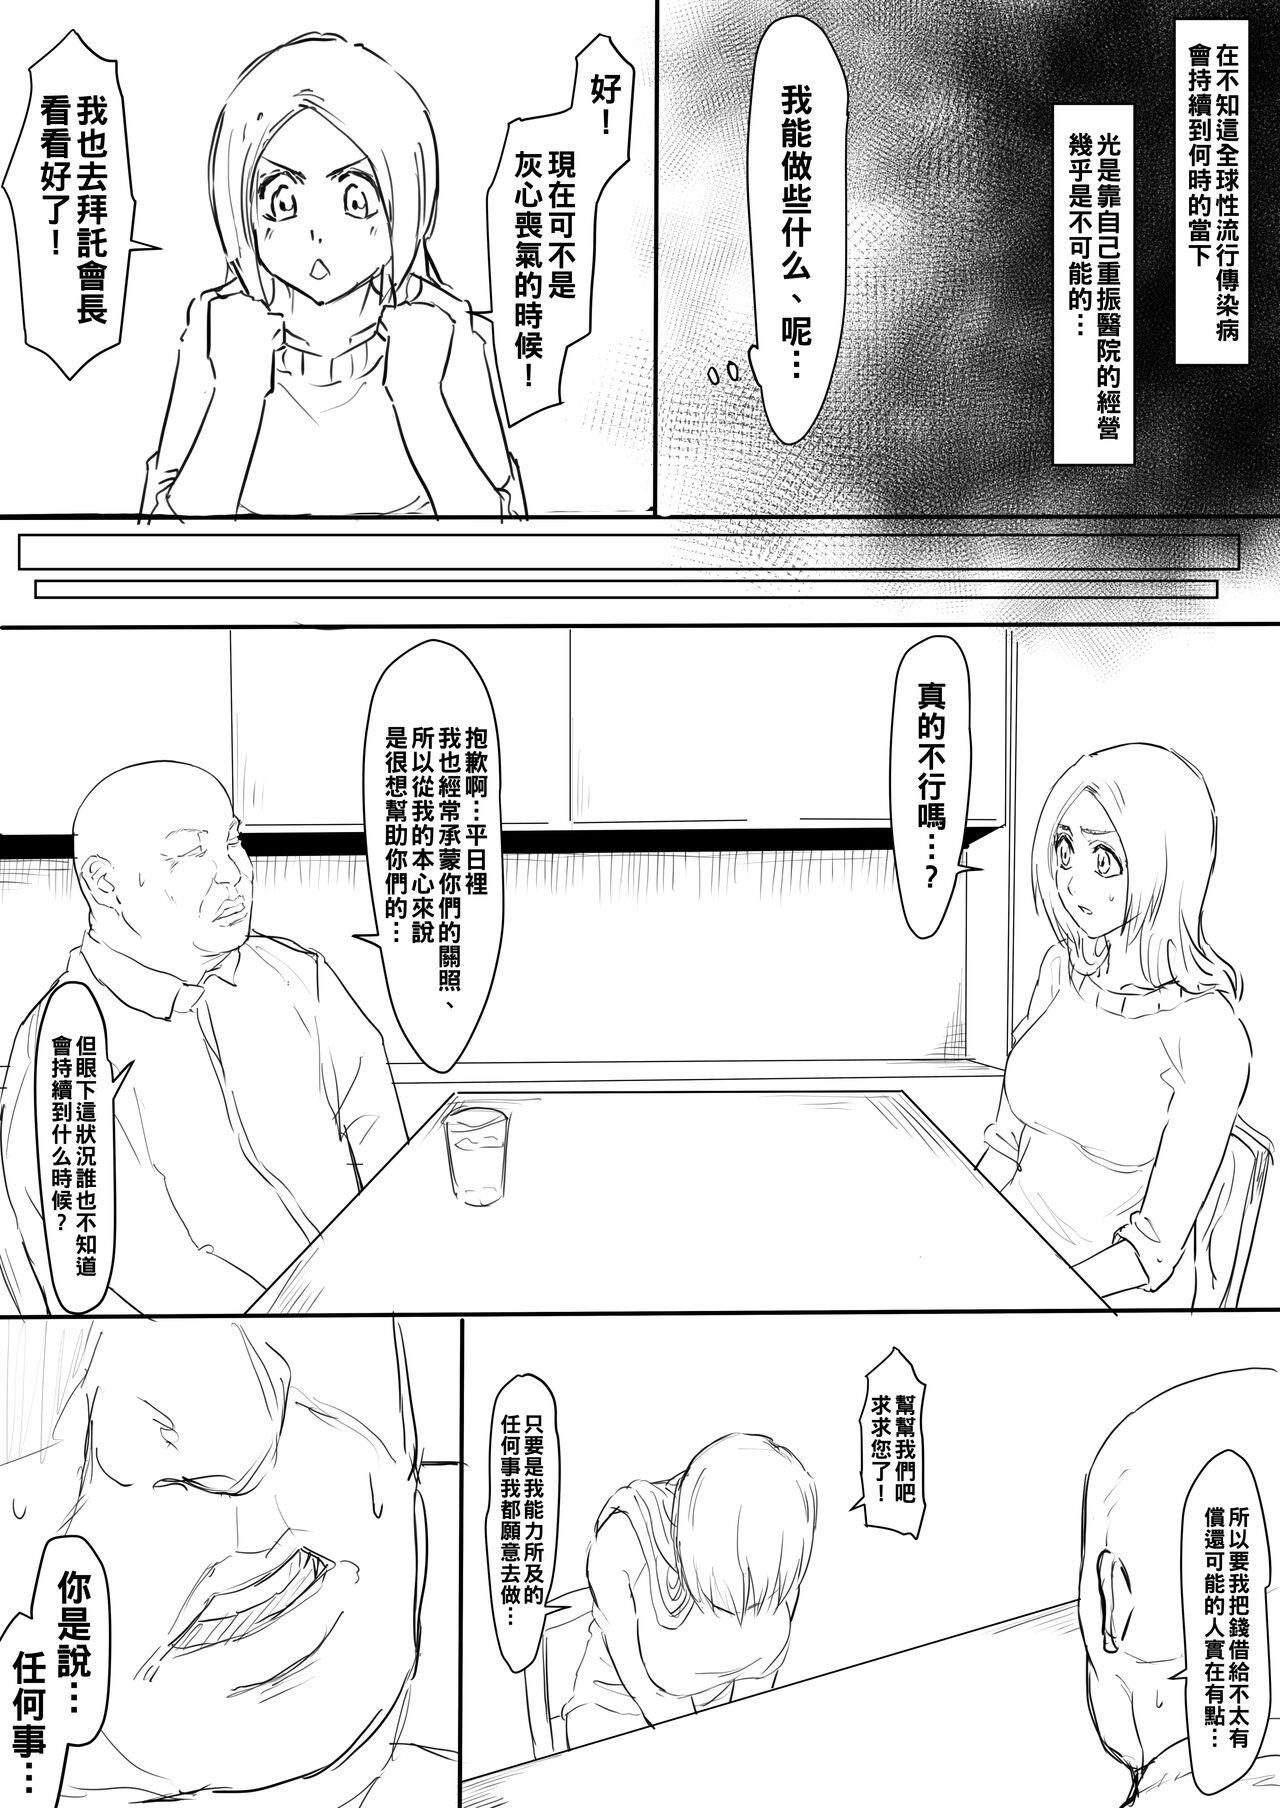 Delicia Orihime Manga - Bleach Fodendo - Page 2